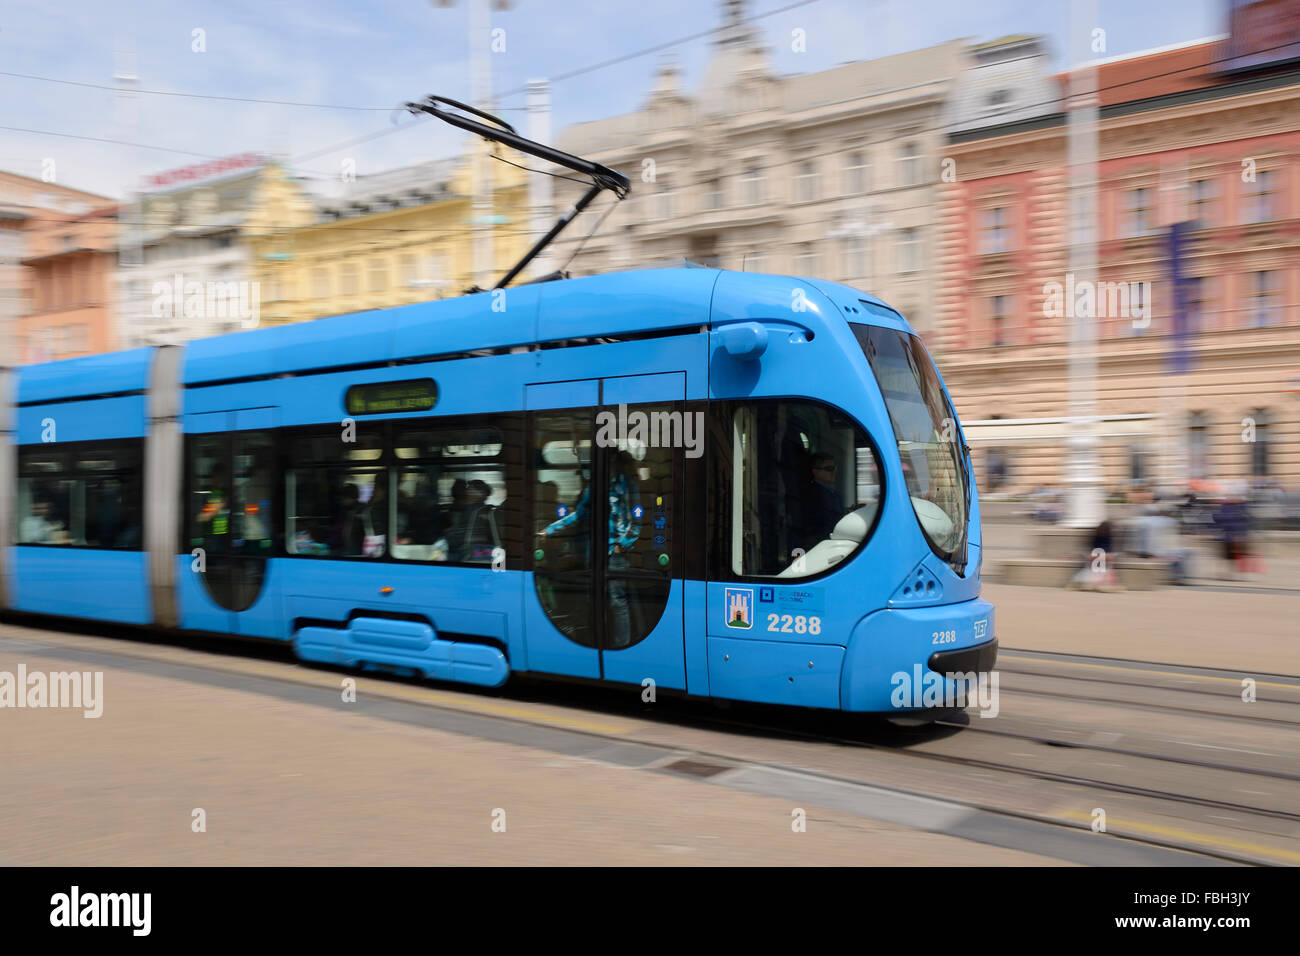 Tram in Ban Jelacic Square, the City Centre of Zagreb, Croatia. Stock Photo